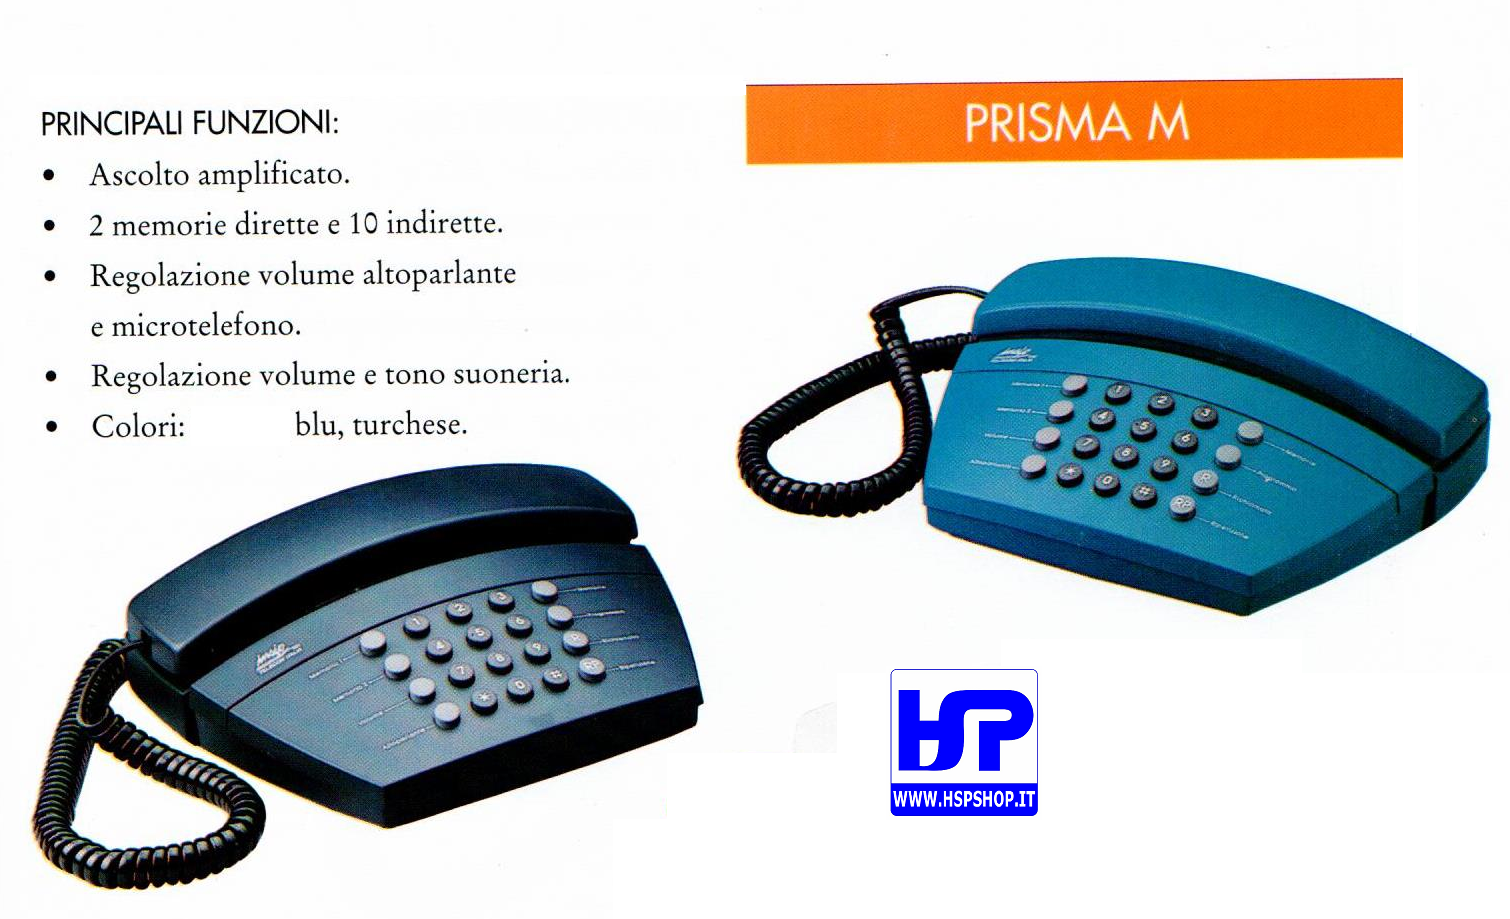 INSIP - PRISMA M - MULTI-FUNCTIONS TELEPHONE